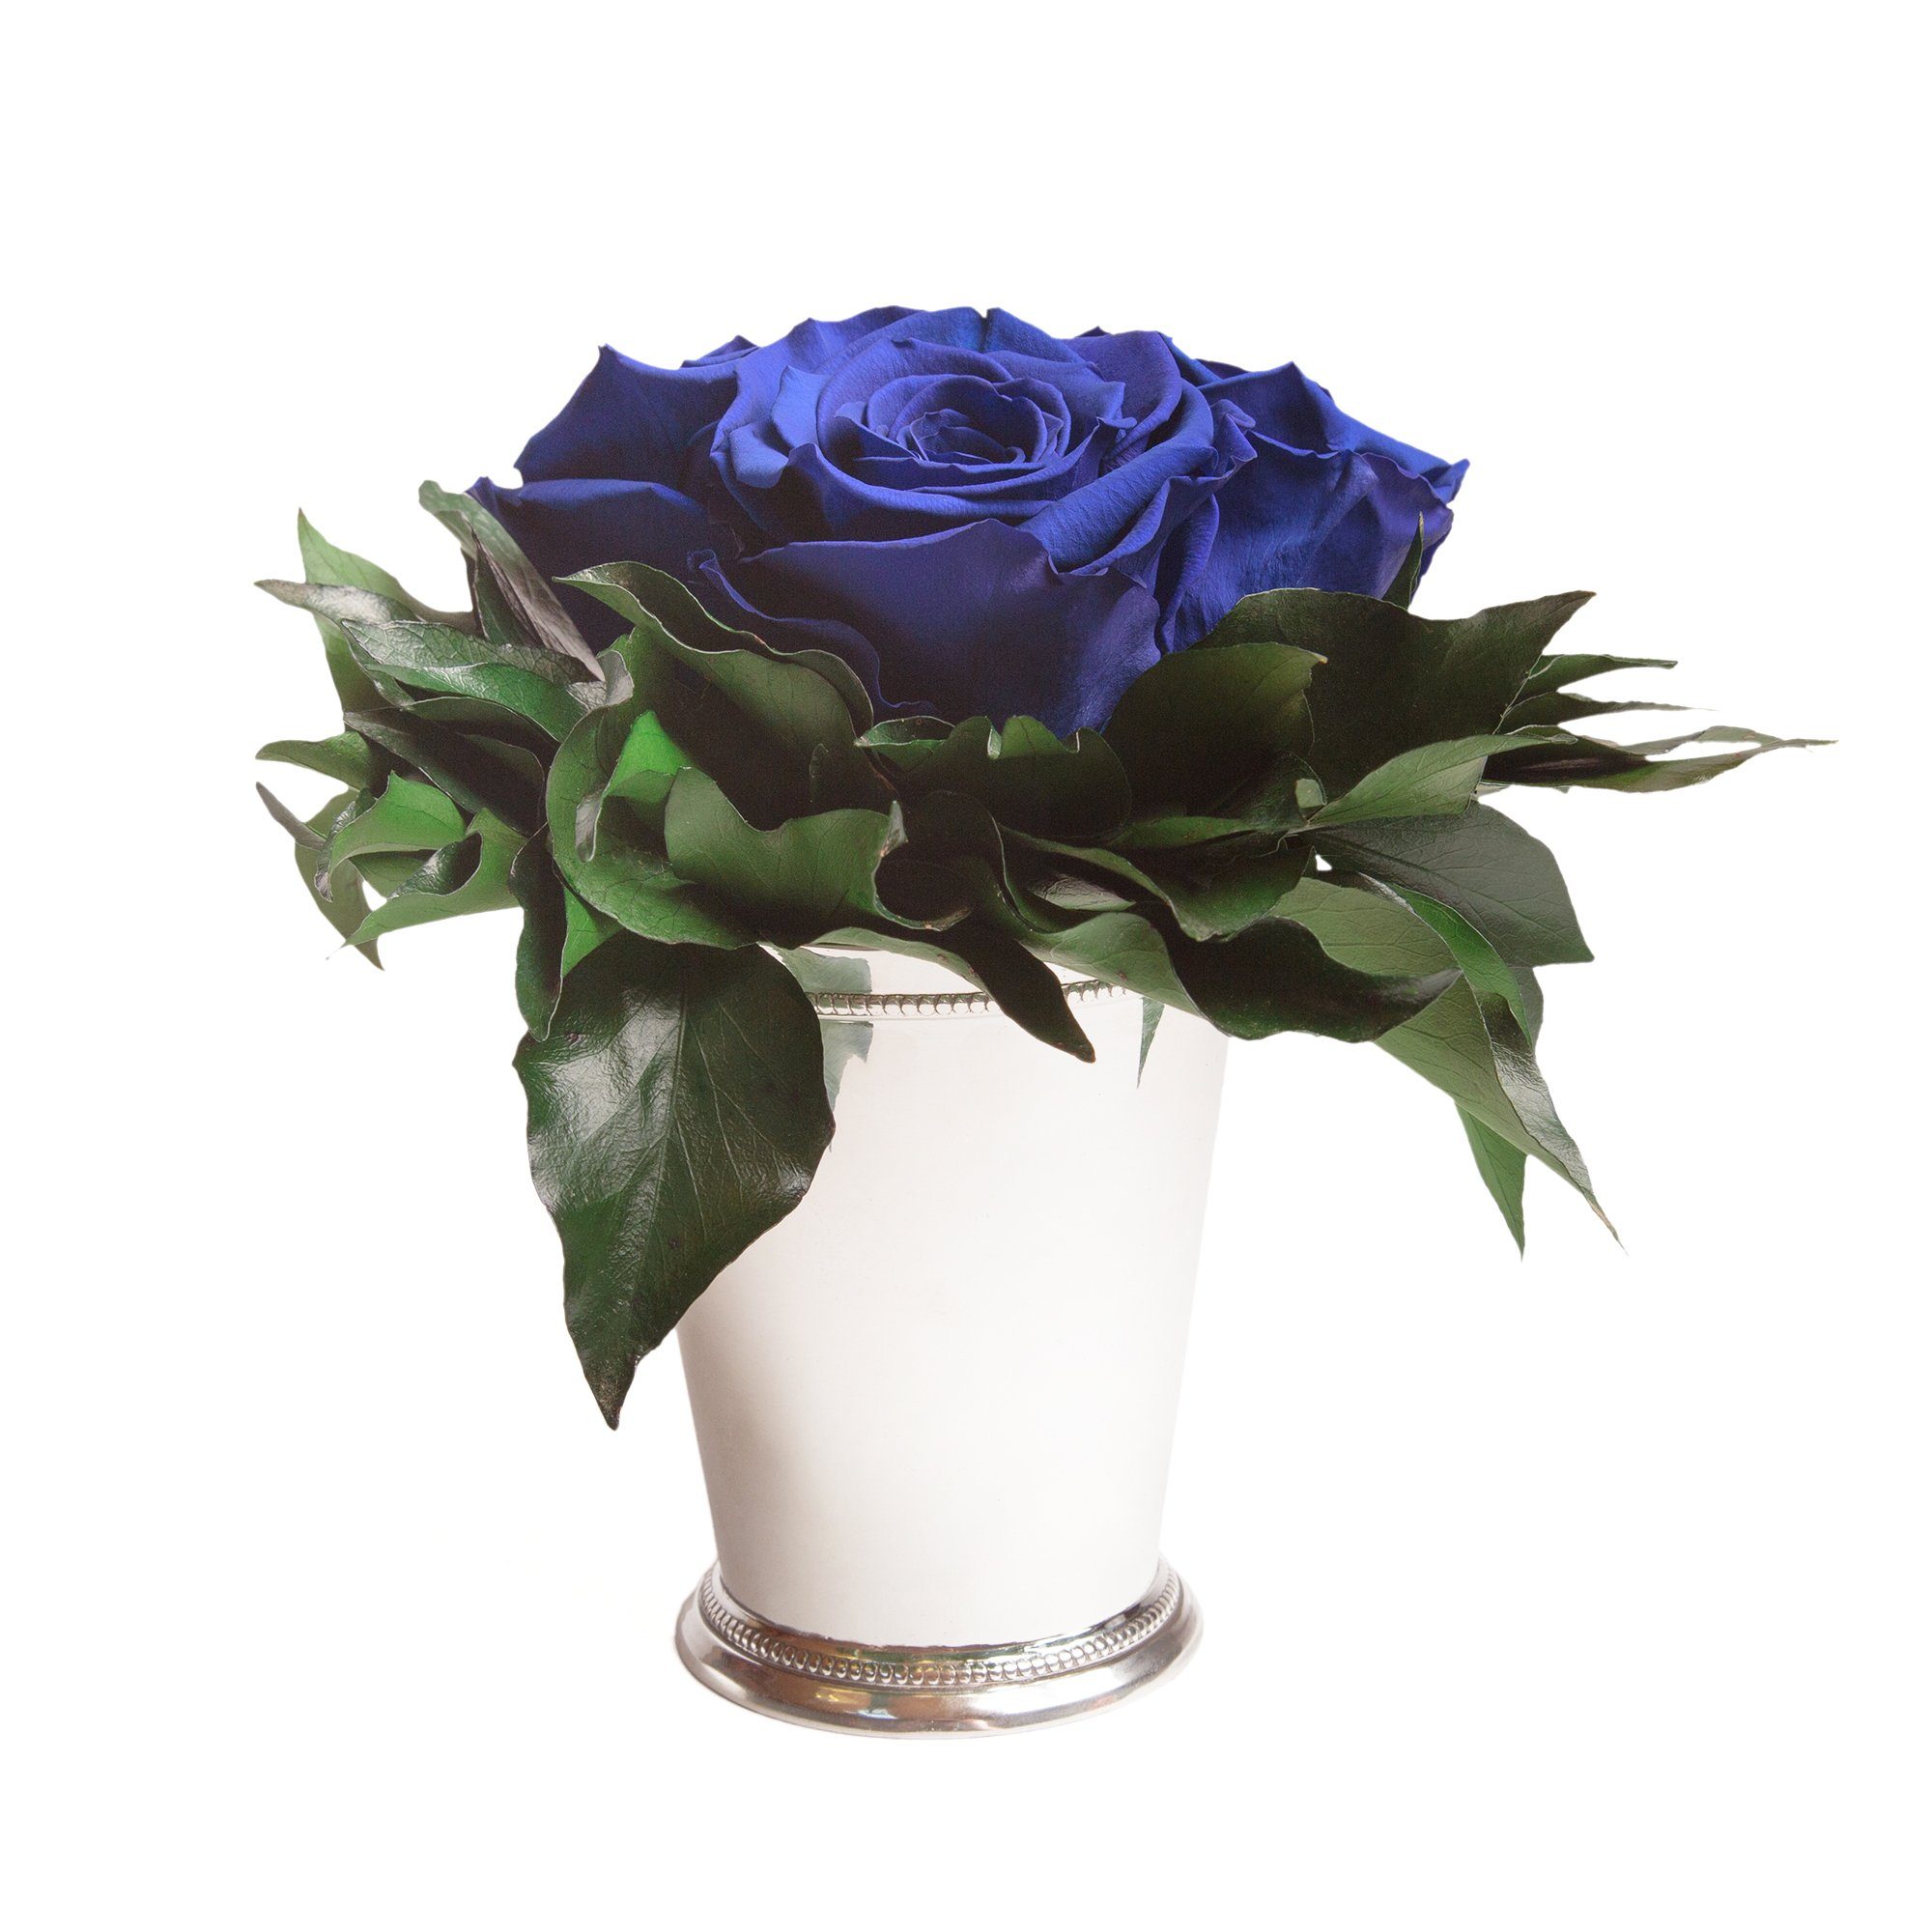 Kunstorchidee 3 Infinity Rosen silberfarbene Vase Wohnzimmer Deko Blumenstrauß Rose, ROSEMARIE SCHULZ Heidelberg, Höhe 15 cm, Rose haltbar bis zu 3 Jahre Blau